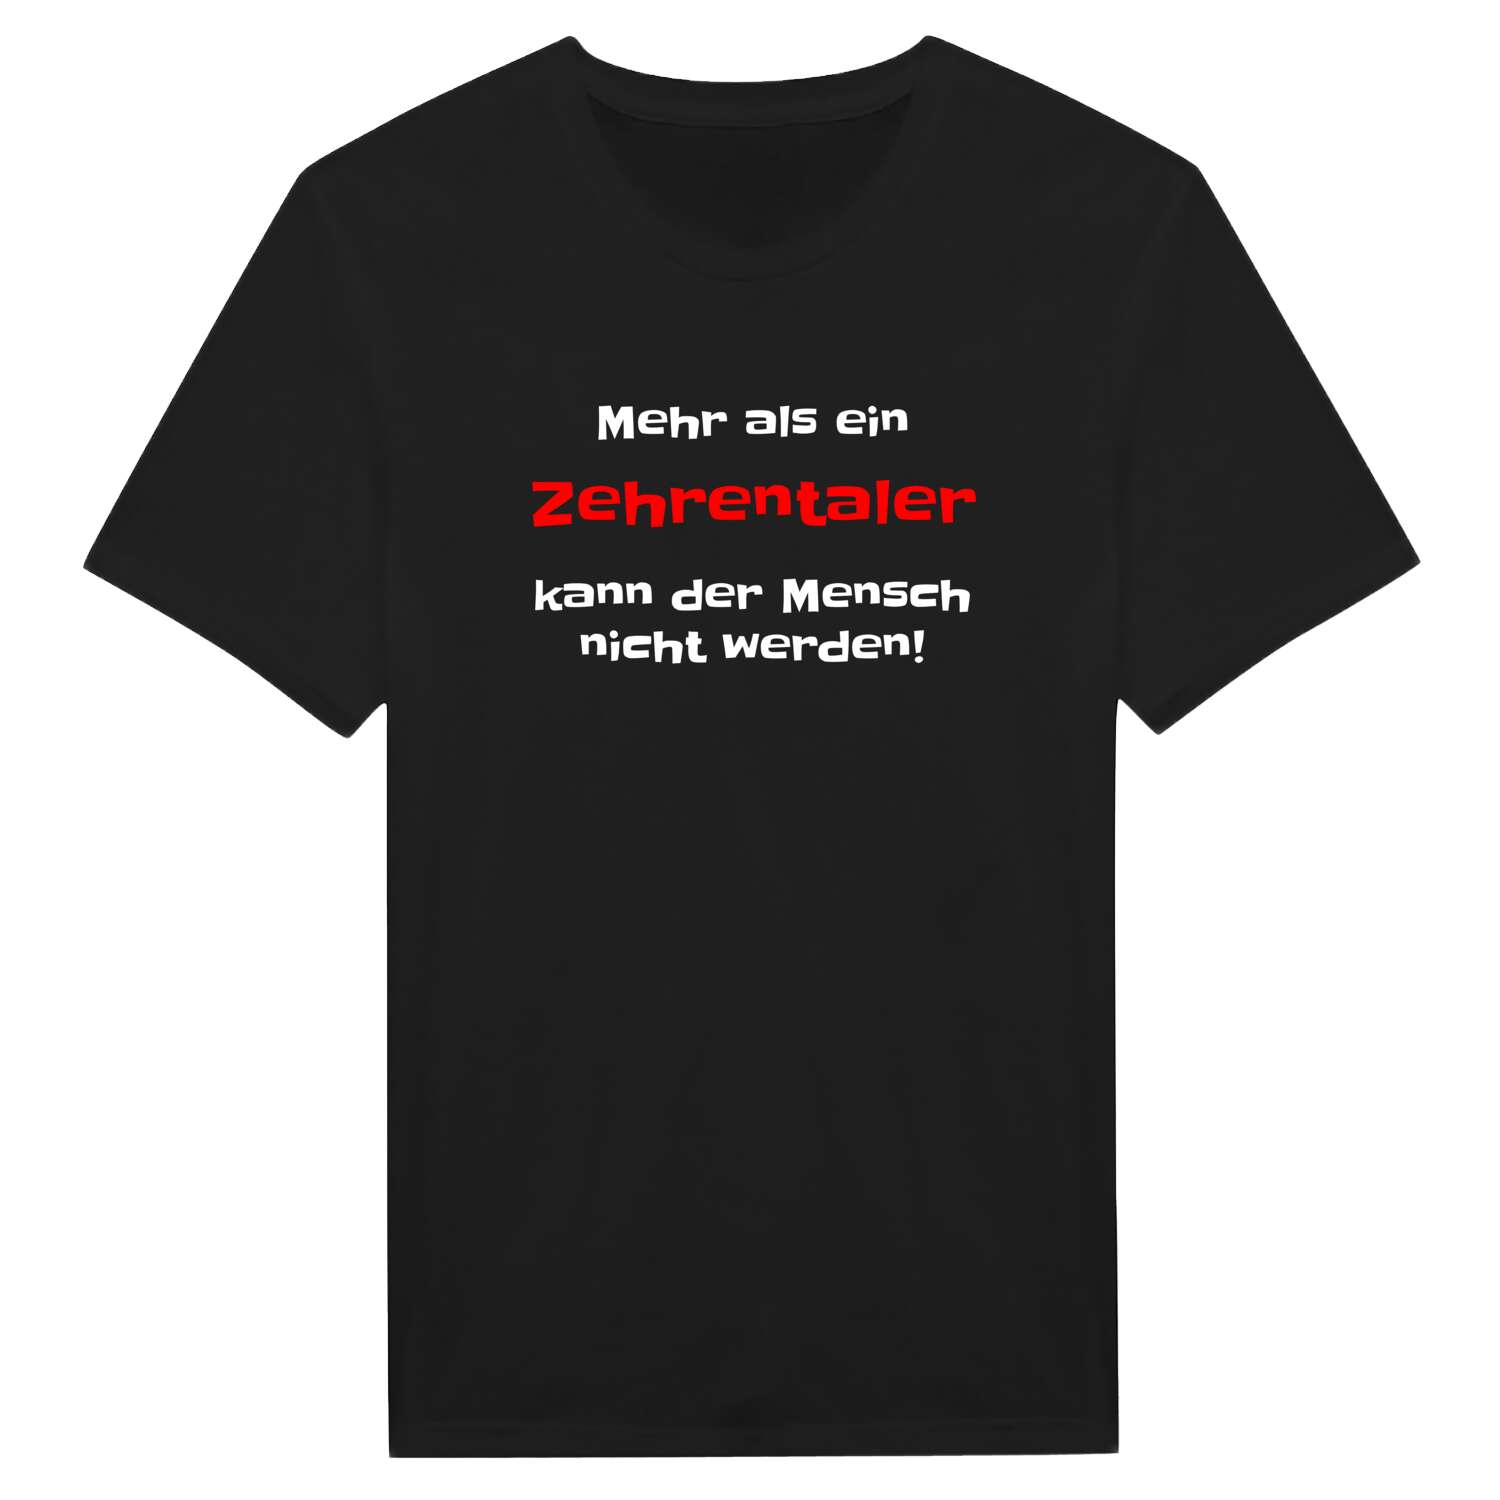 Zehrental T-Shirt »Mehr als ein«